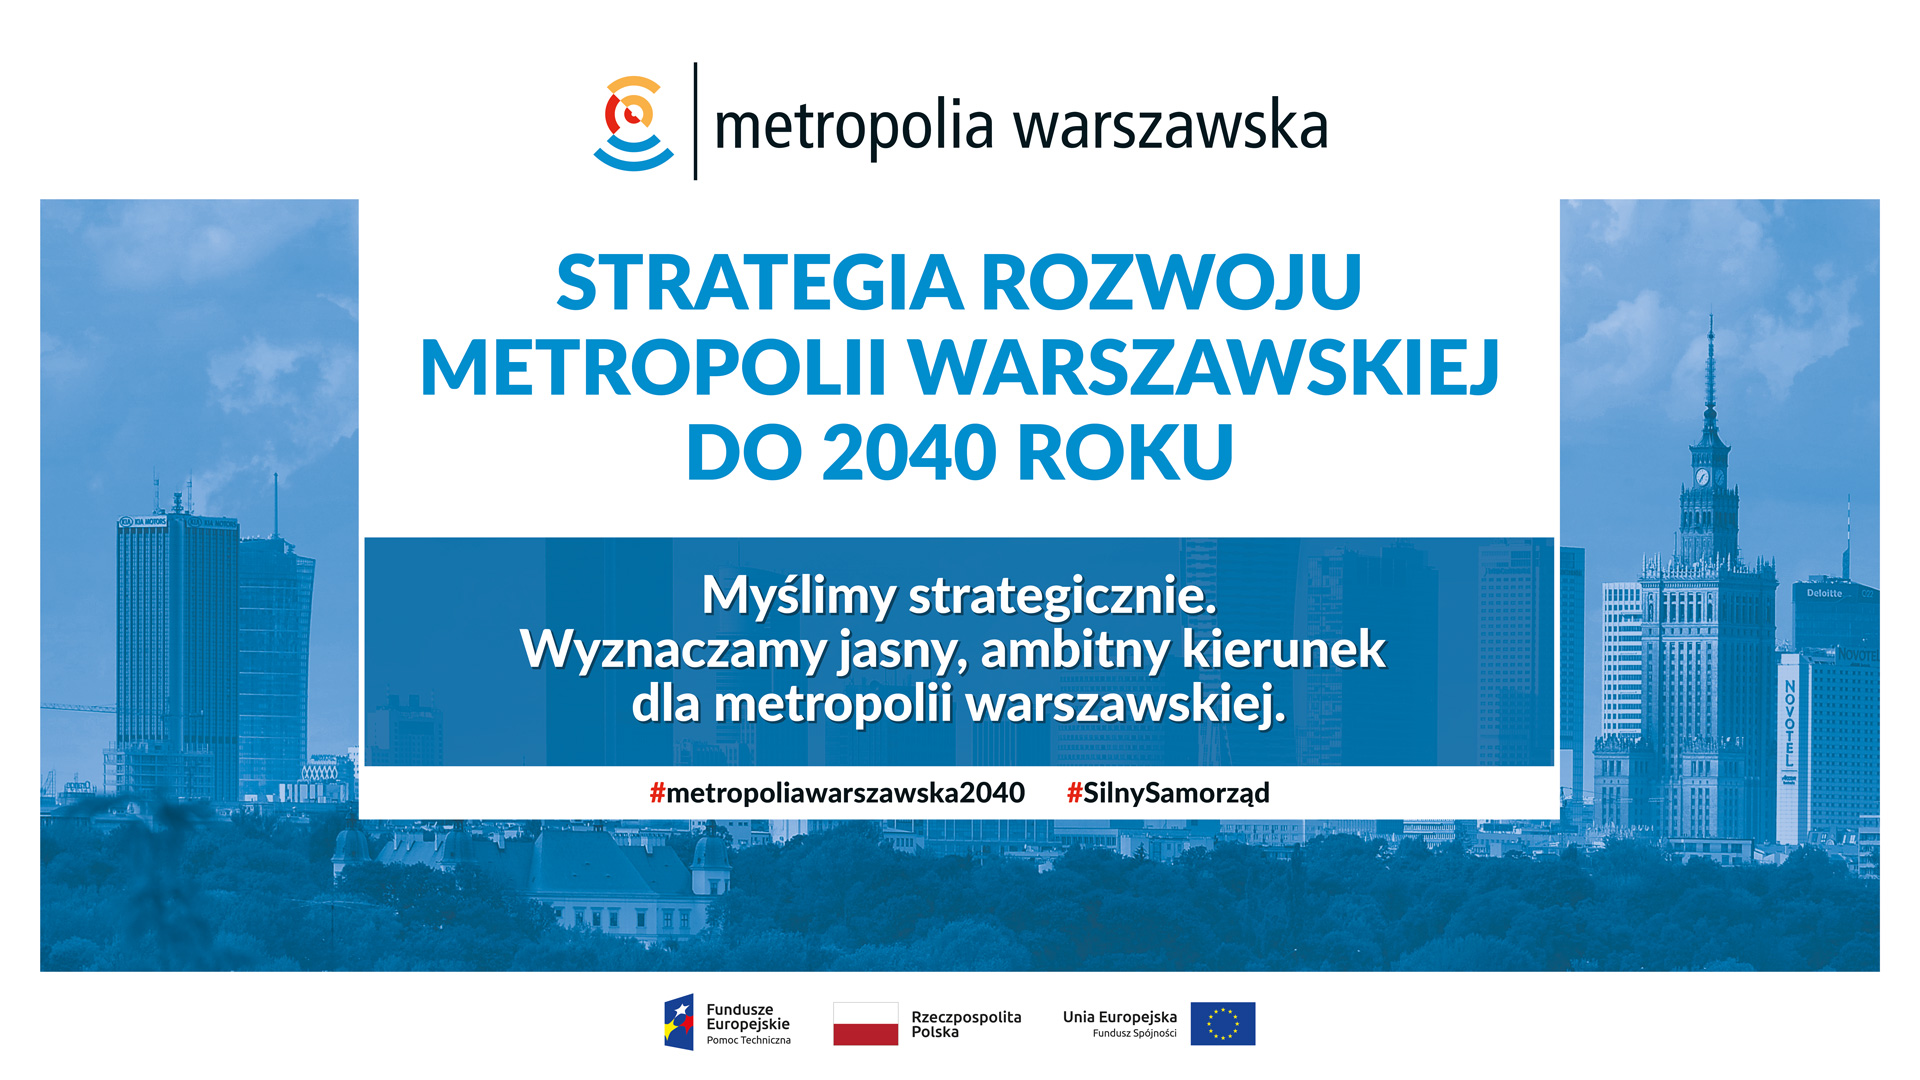 Plakat w kolorze białym i błękitnym informujący o Strategii rozwoju metropolii warszawskiej do 2040 roku